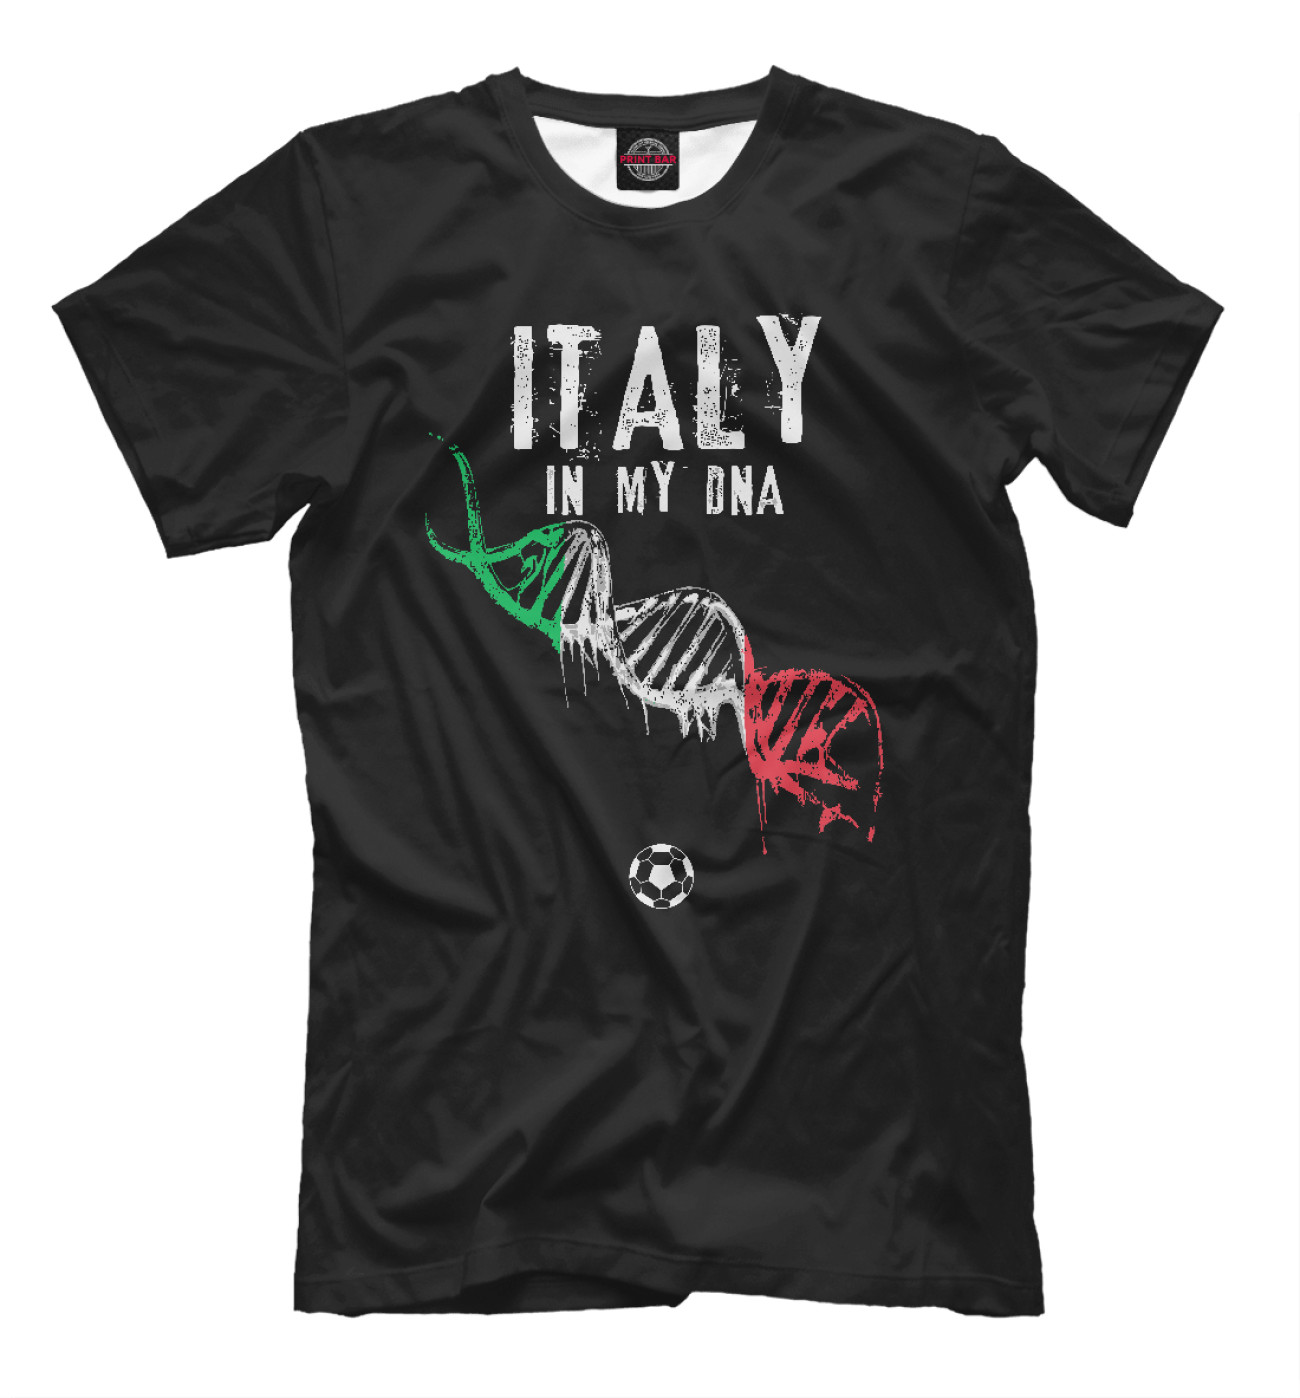 Мужская Футболка Италия в ДНК, артикул: FNS-396119-fut-2